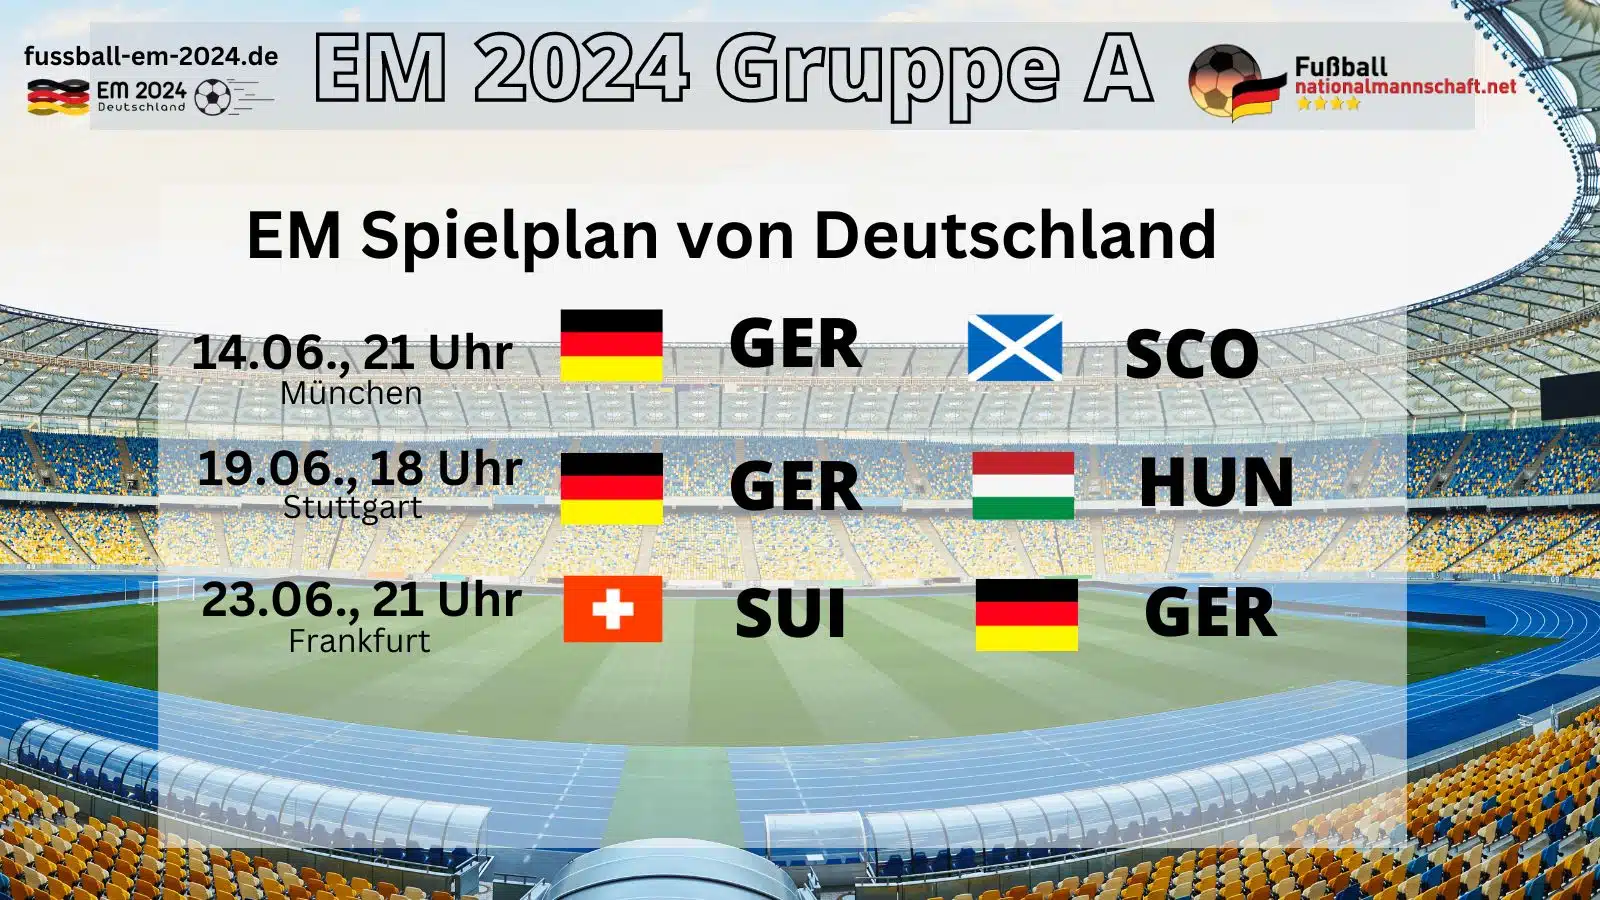 Das ist der EM Spielplan von Deutschland in der Vorrunde